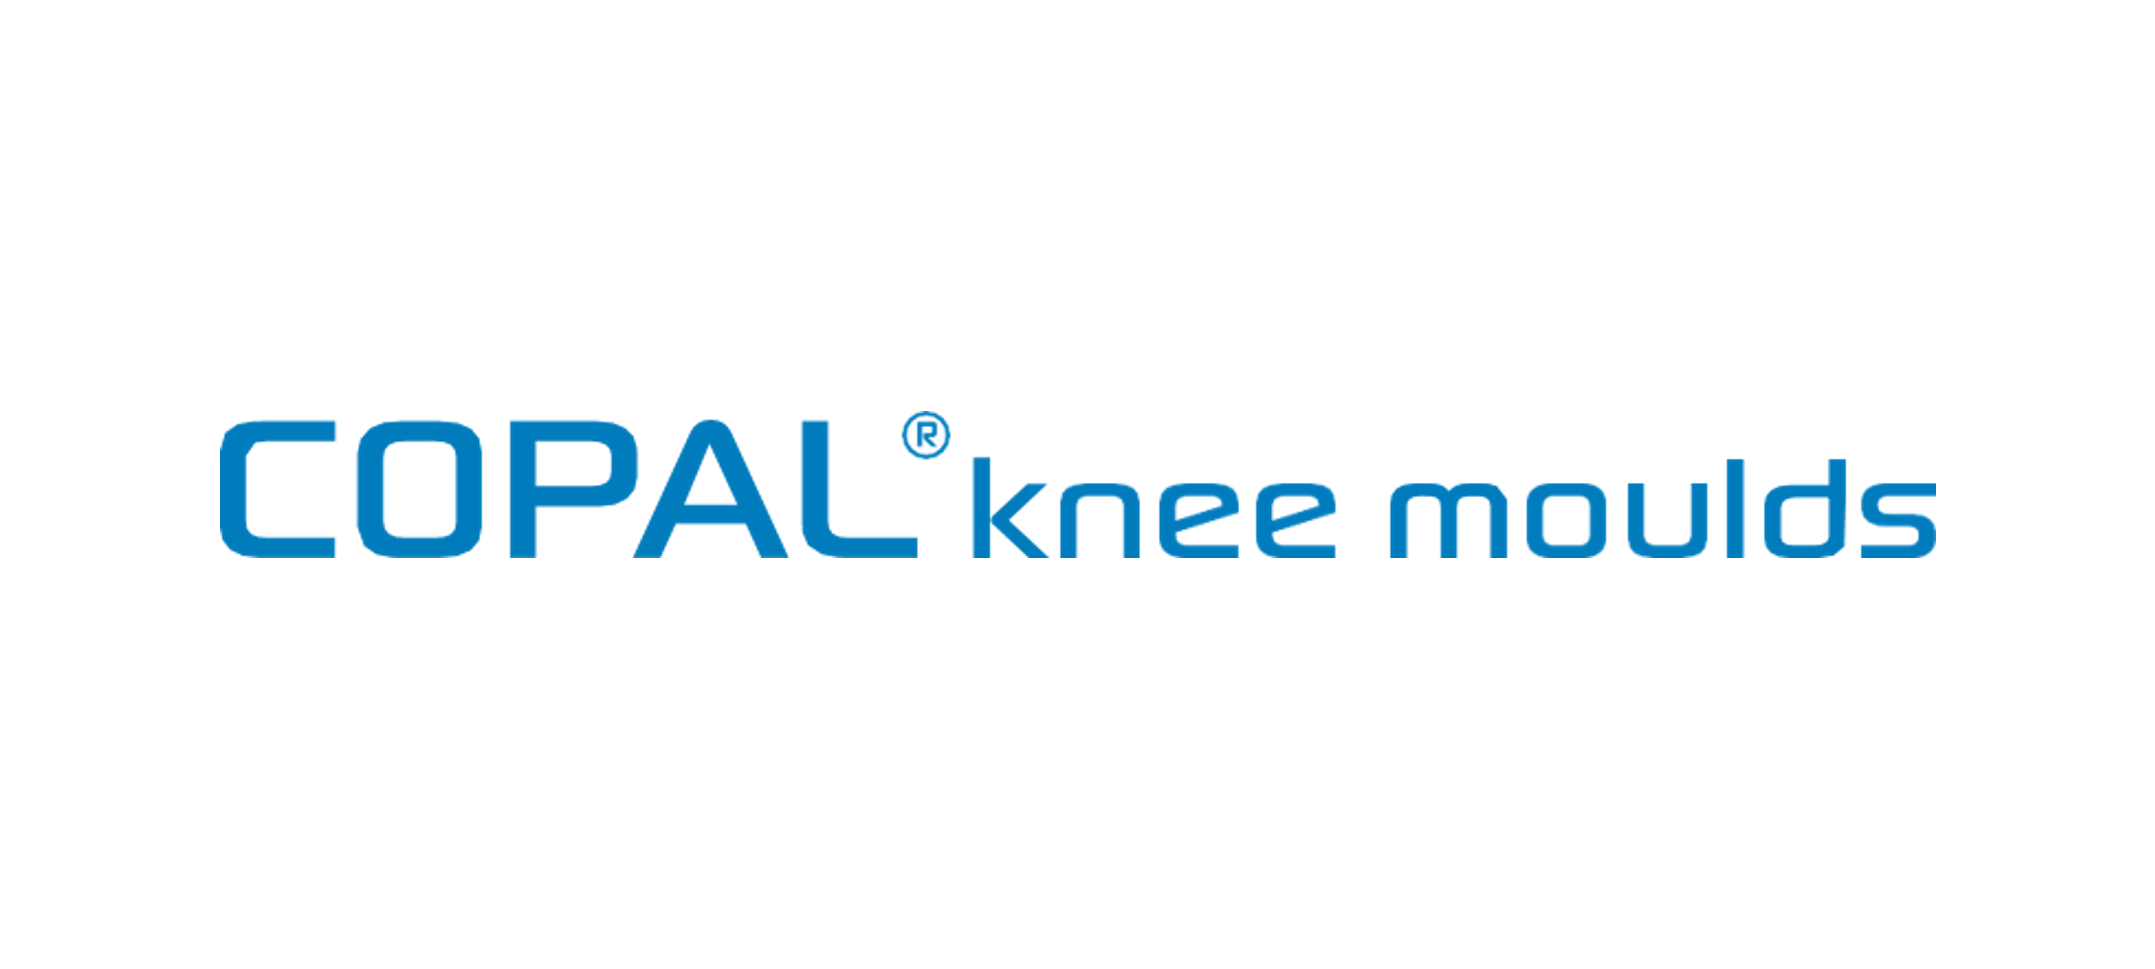 COPAL knee moulds